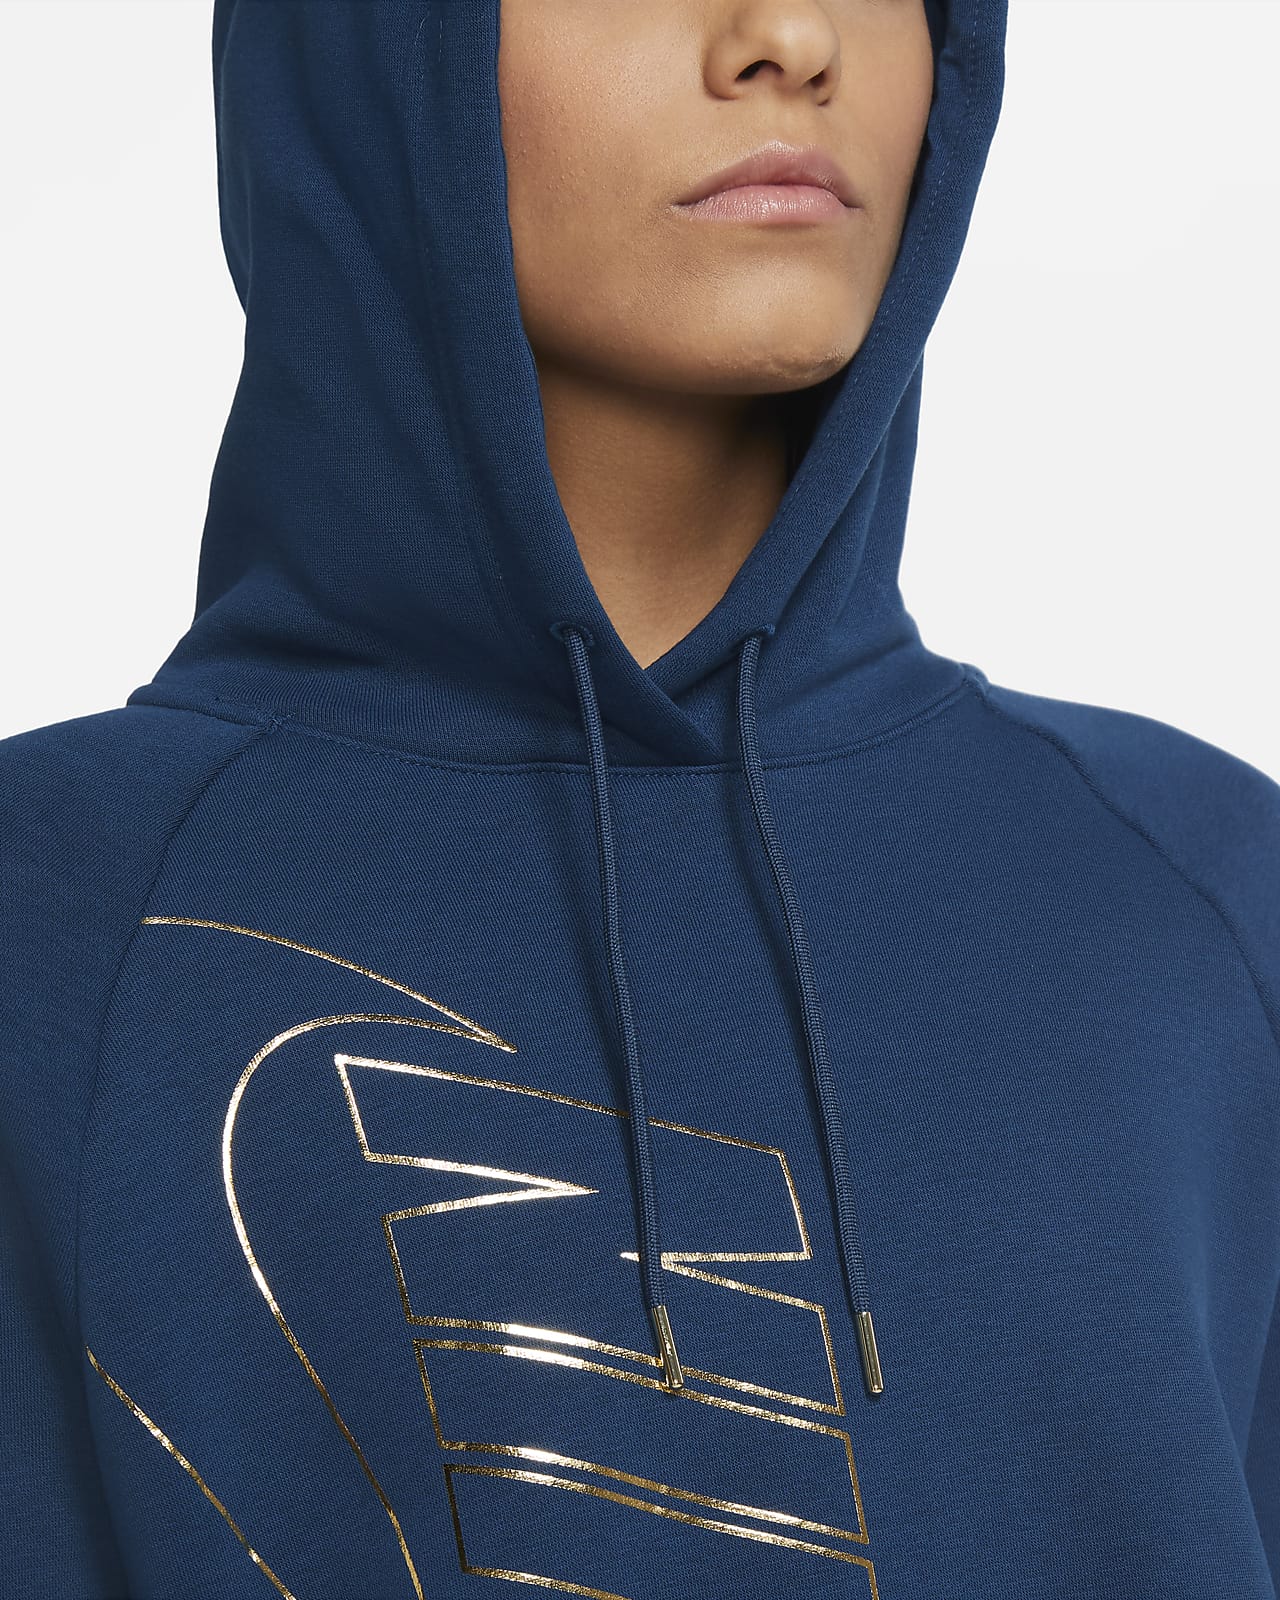 nike icon clash fleece hoodie